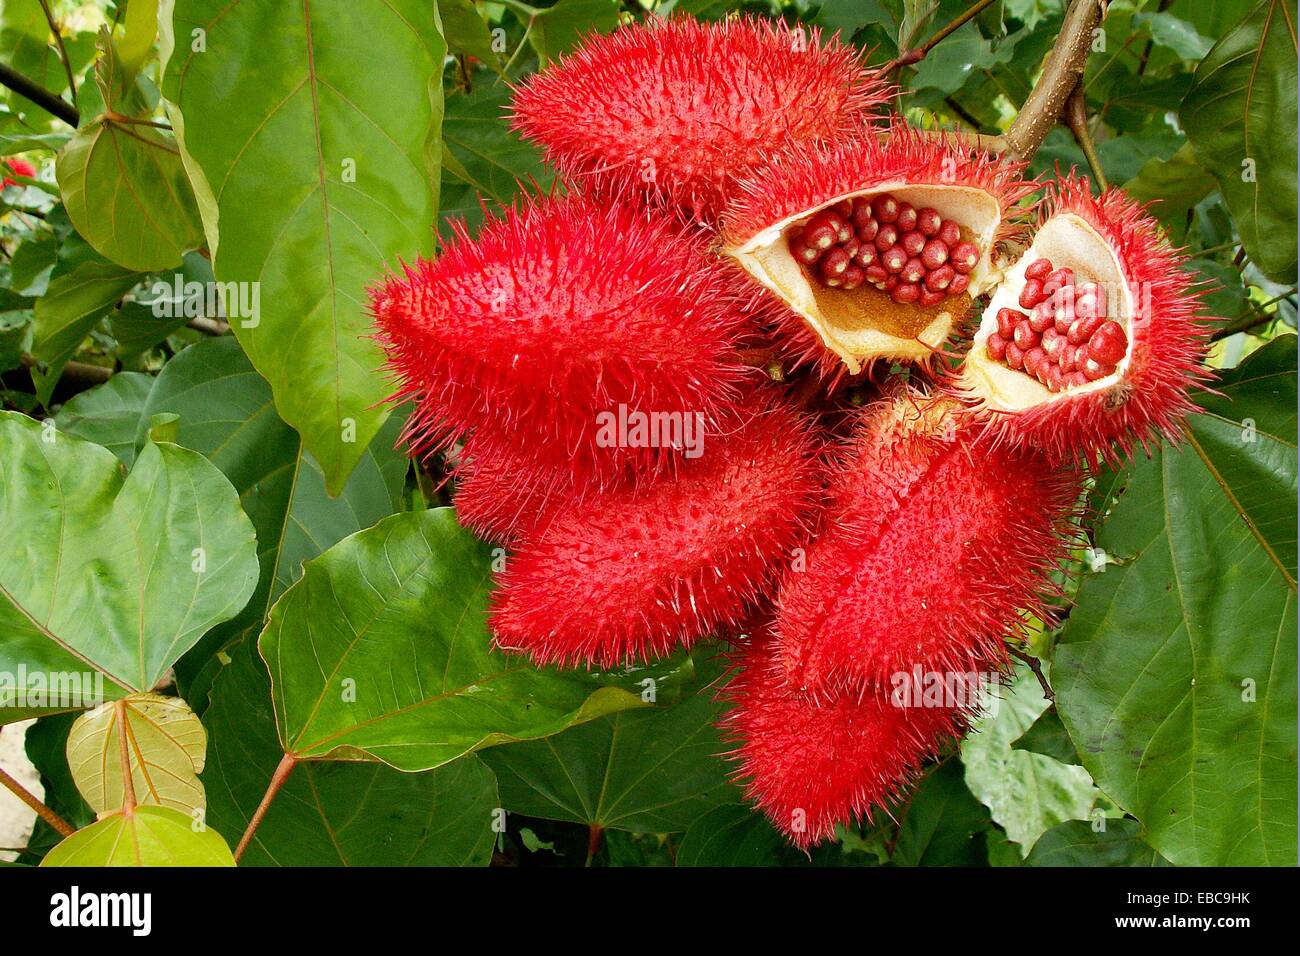 Urucum, Bixa orellana, Bixaceae, frutti, semi, Senador Guiomard, acro, Brasile, 2009 Capsule 4cm di lunghezza Foto stock - Alamy